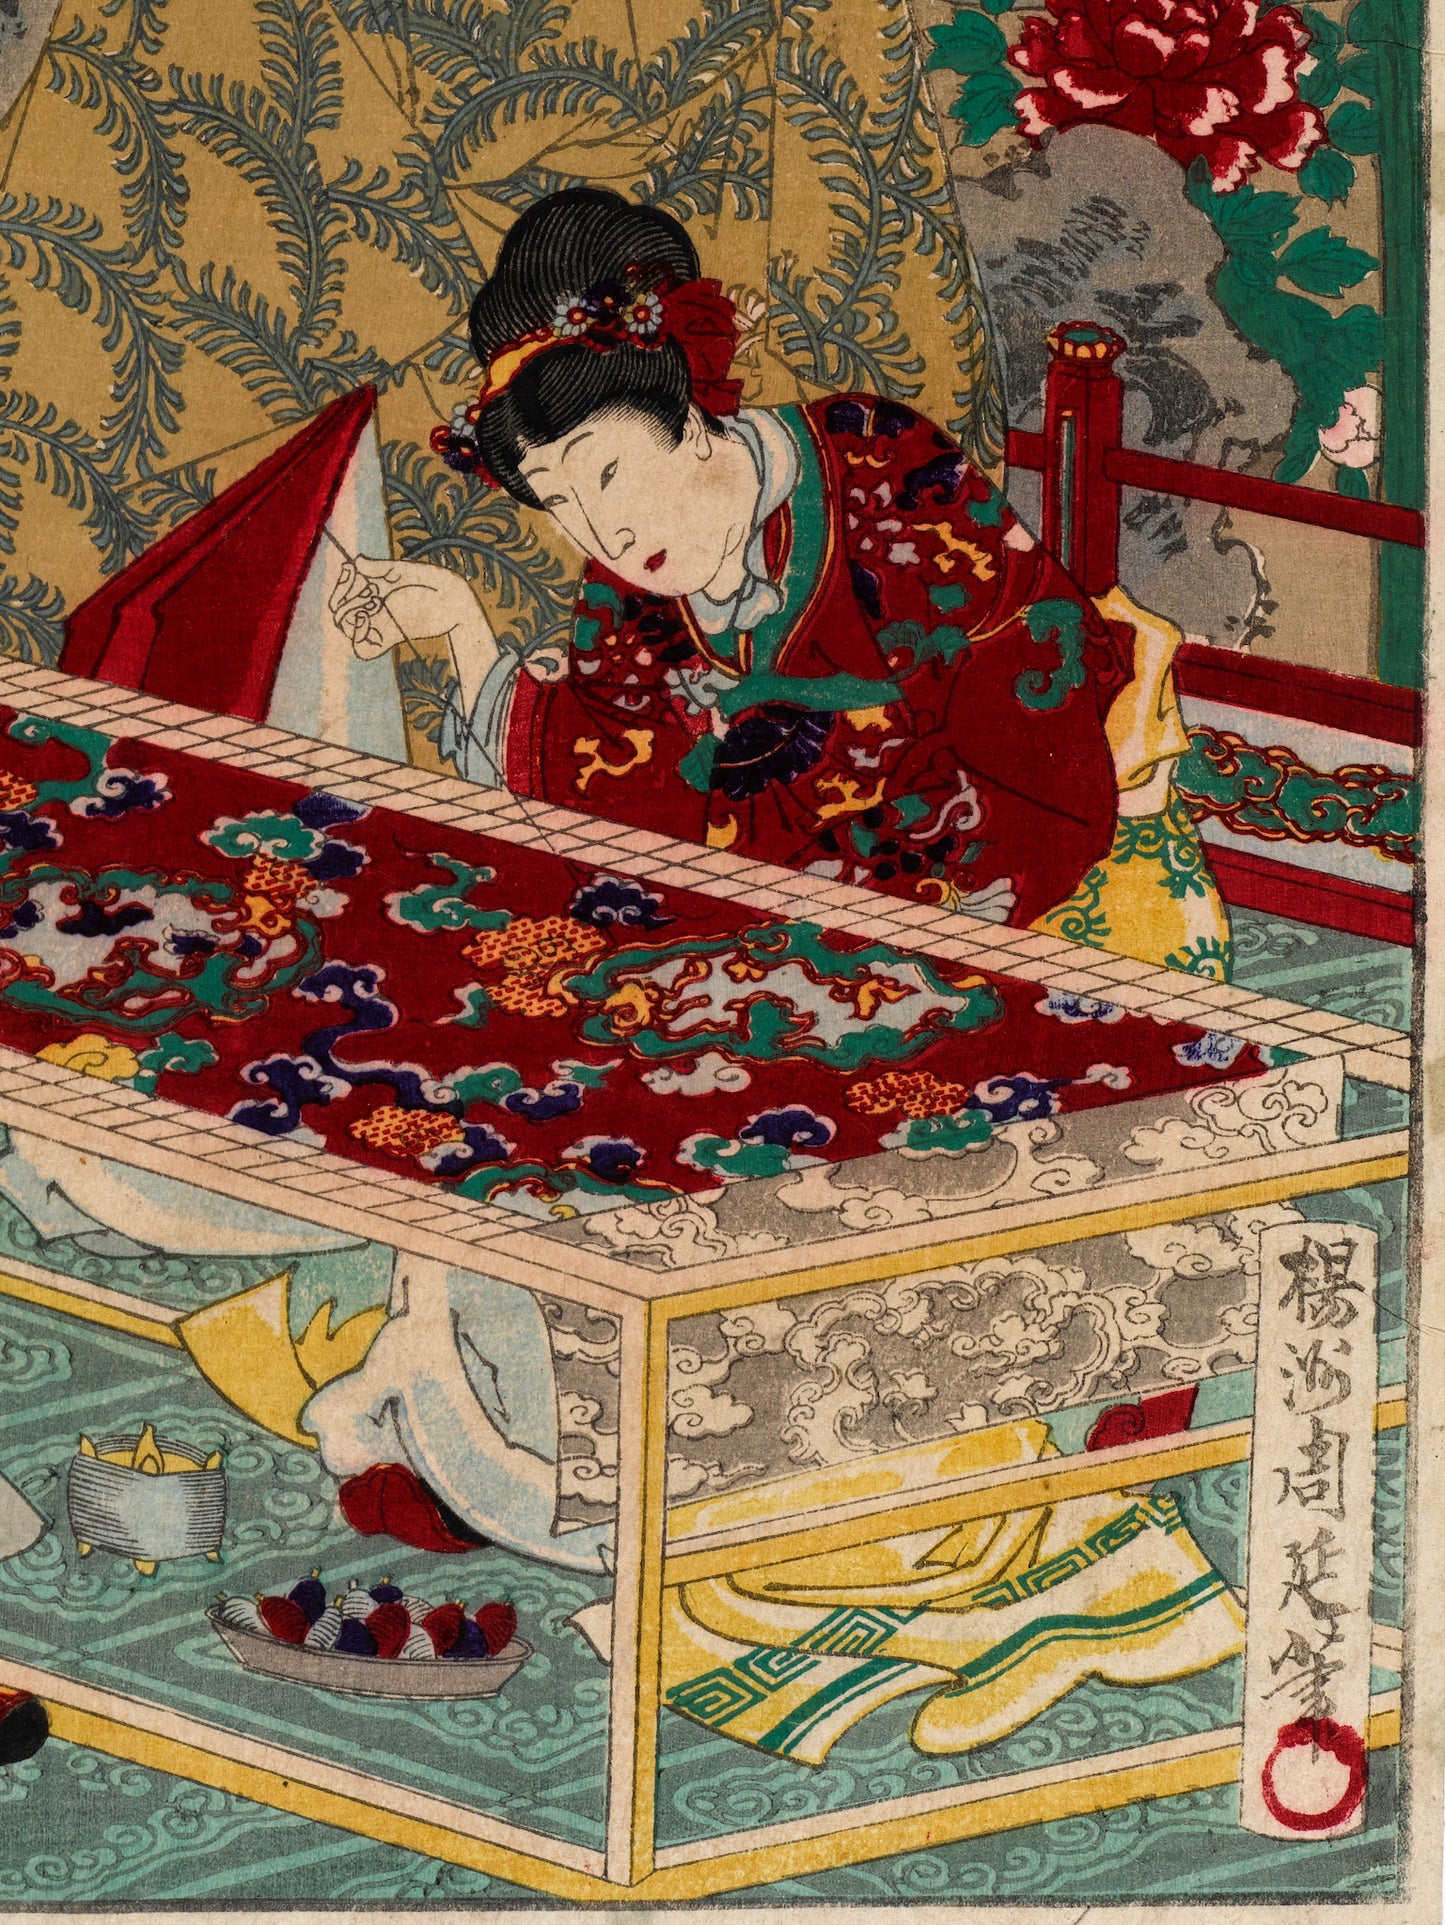 Estampes japonaise Chikanobu série brocards de l'est n° 38, brodeuse aiguilles à la main, tissu rouge sur métier à tisser,  broderies traditionnelles chinoises materiel de couture sous la table